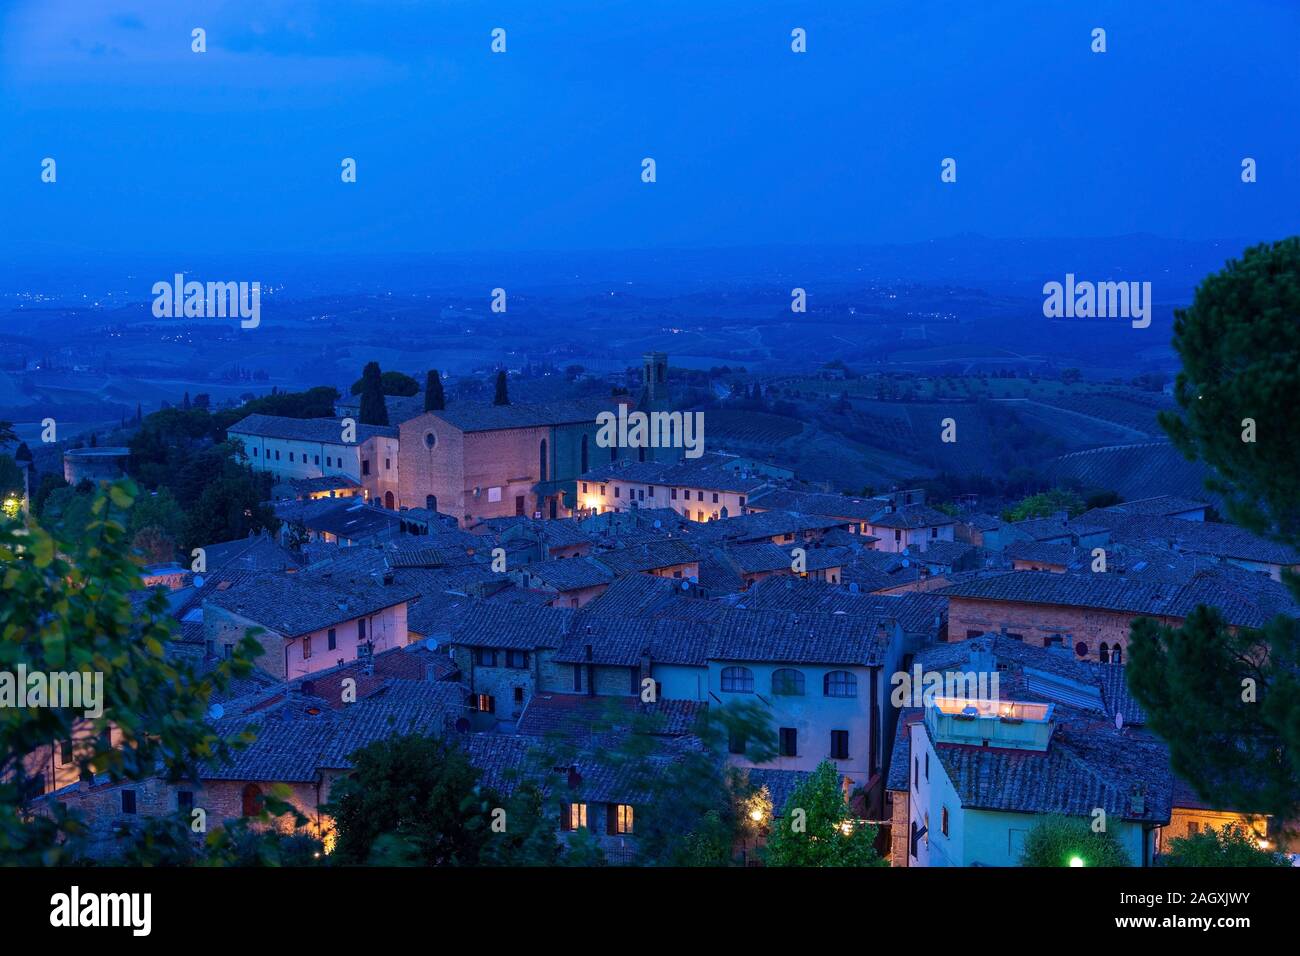 San Gimignano ist eine italienische Kleinstadt in der Provinz Siena, Toskana, mit einem mittelalterlichen Stadtkern und wird auch "Mittelalterliches M Stockfoto